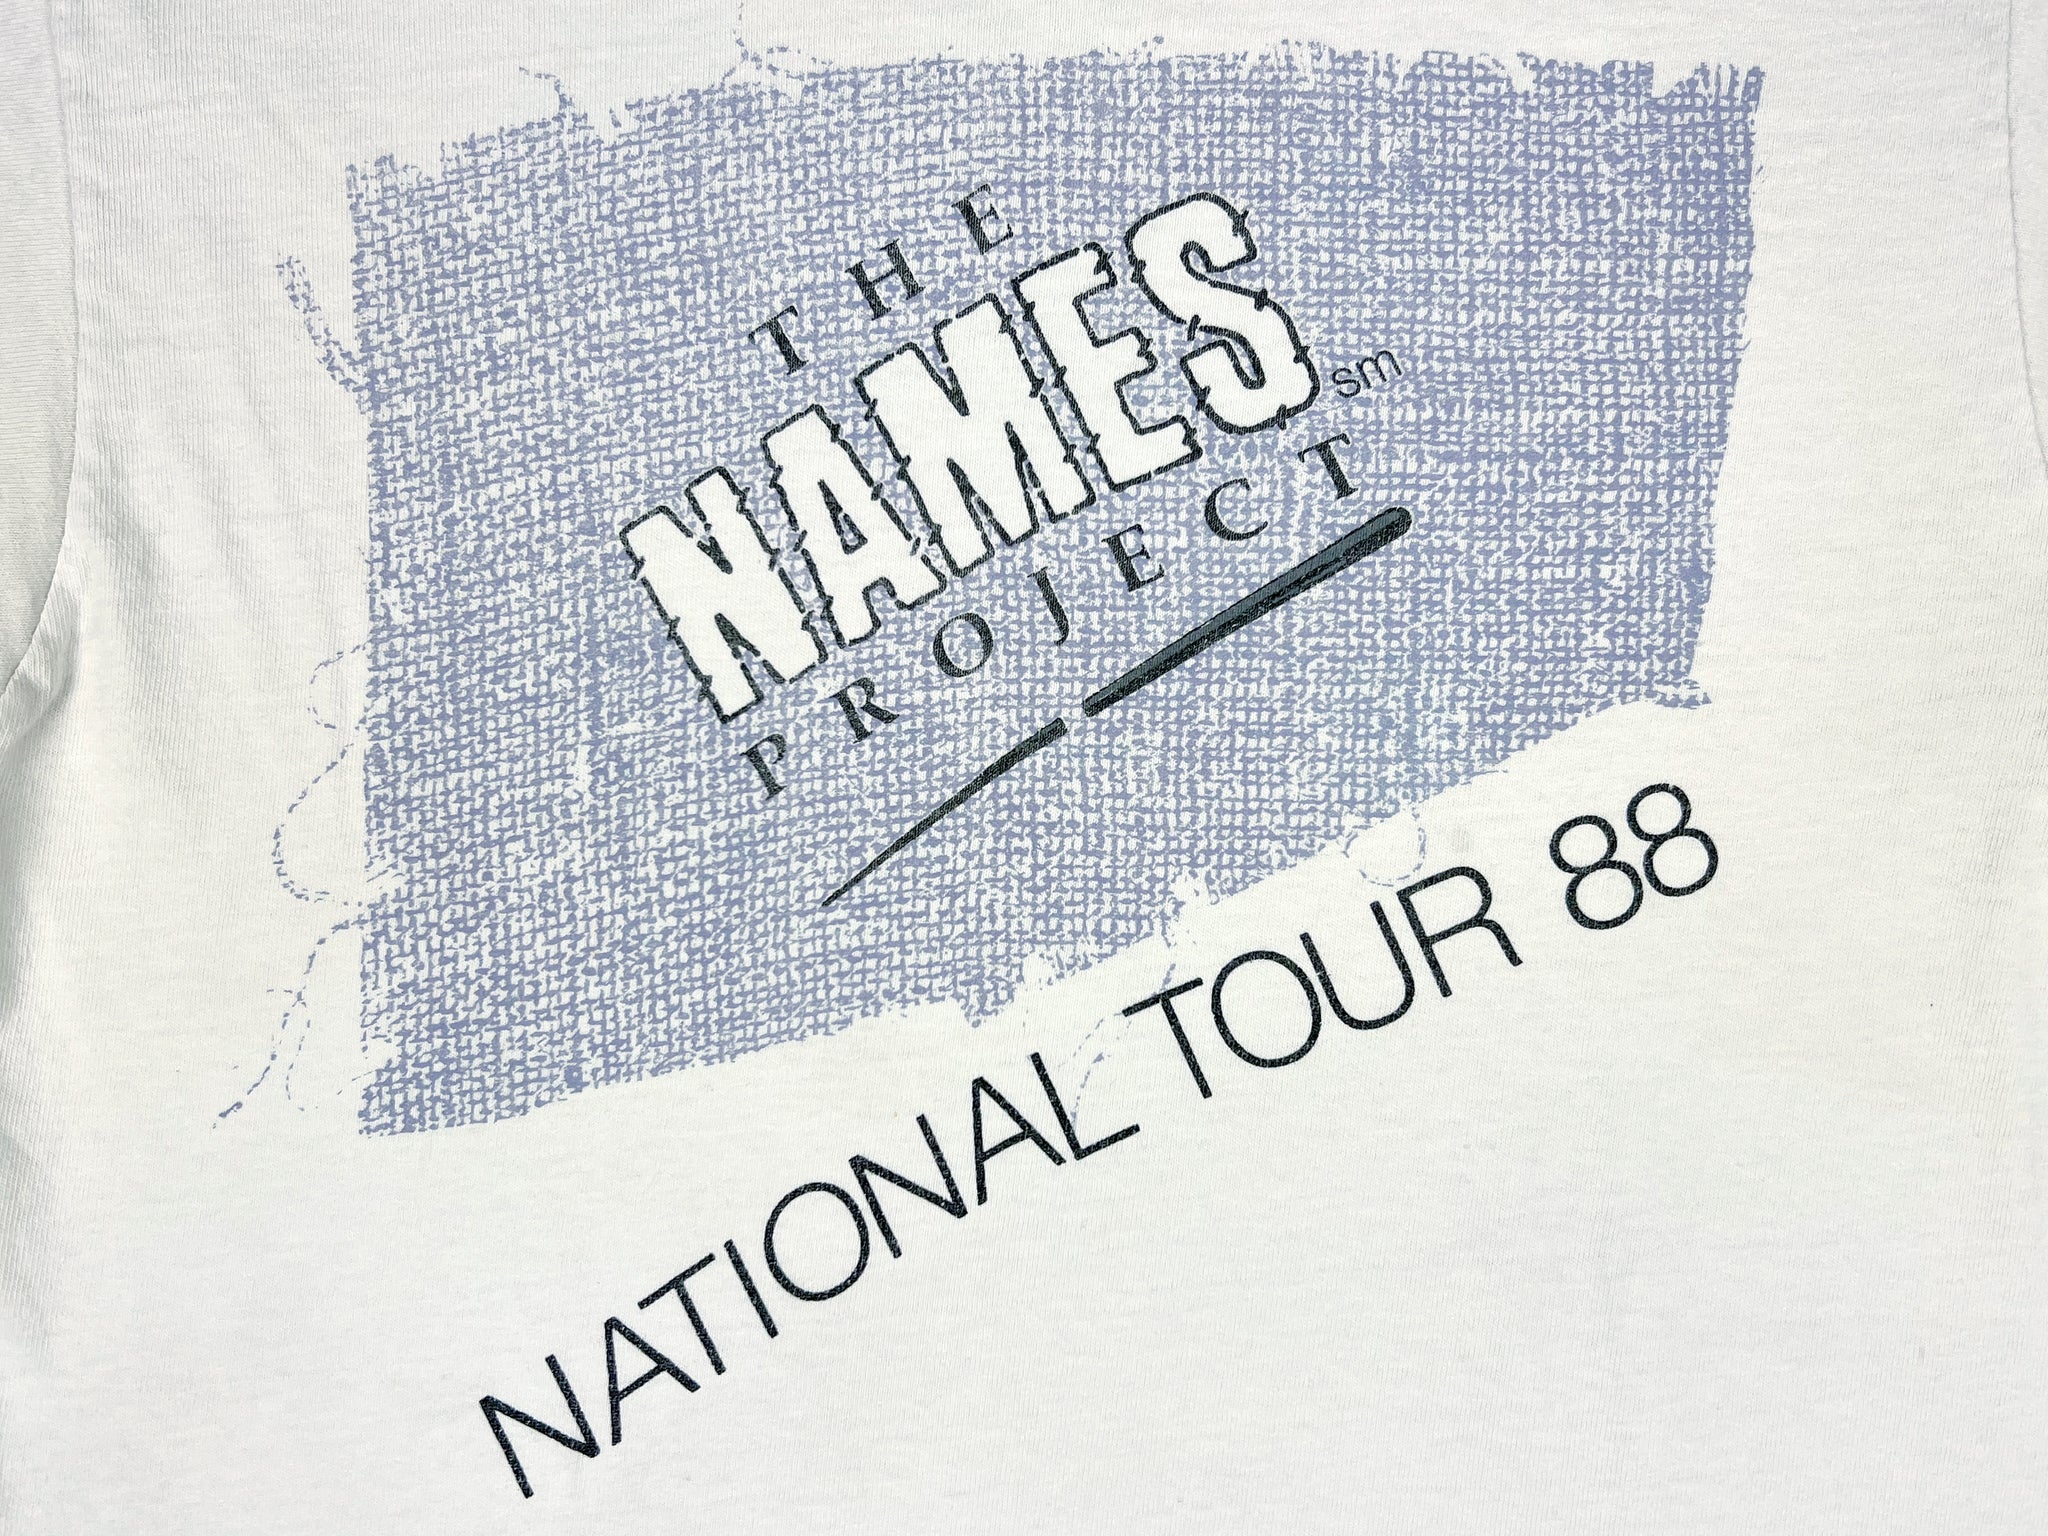 Names Project 1988 Tour T-Shirt